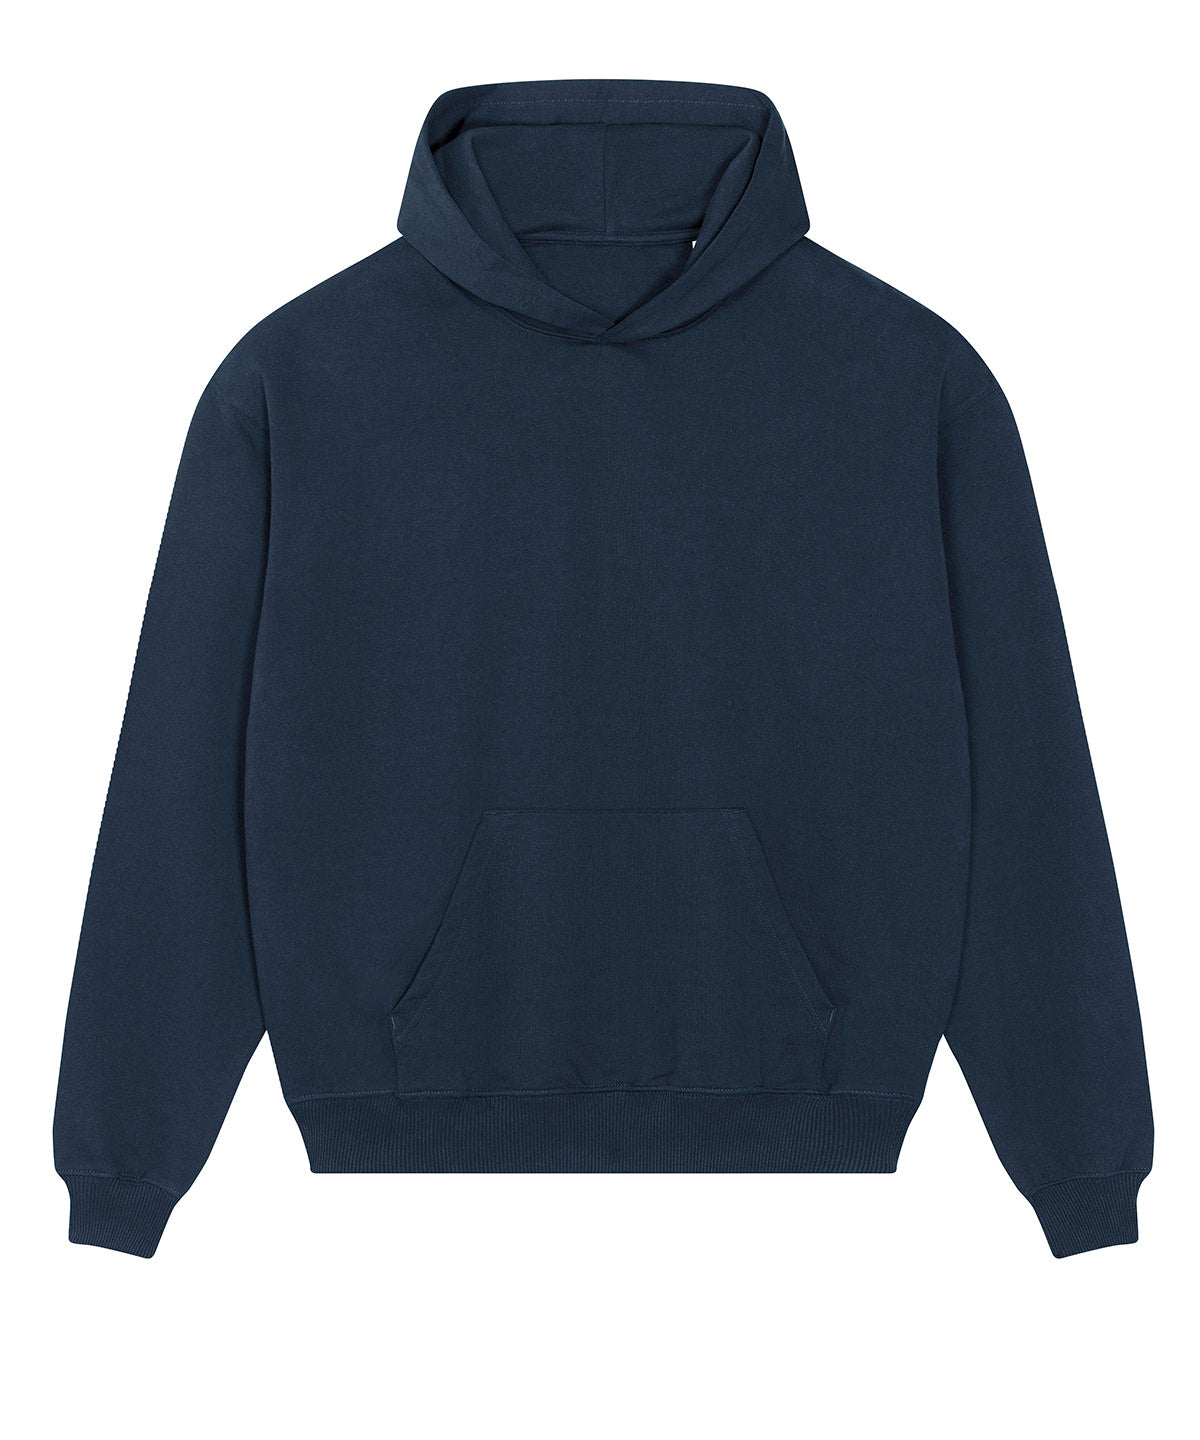 Unisex Cooper dry hoodie sweatshirt (STSU797)